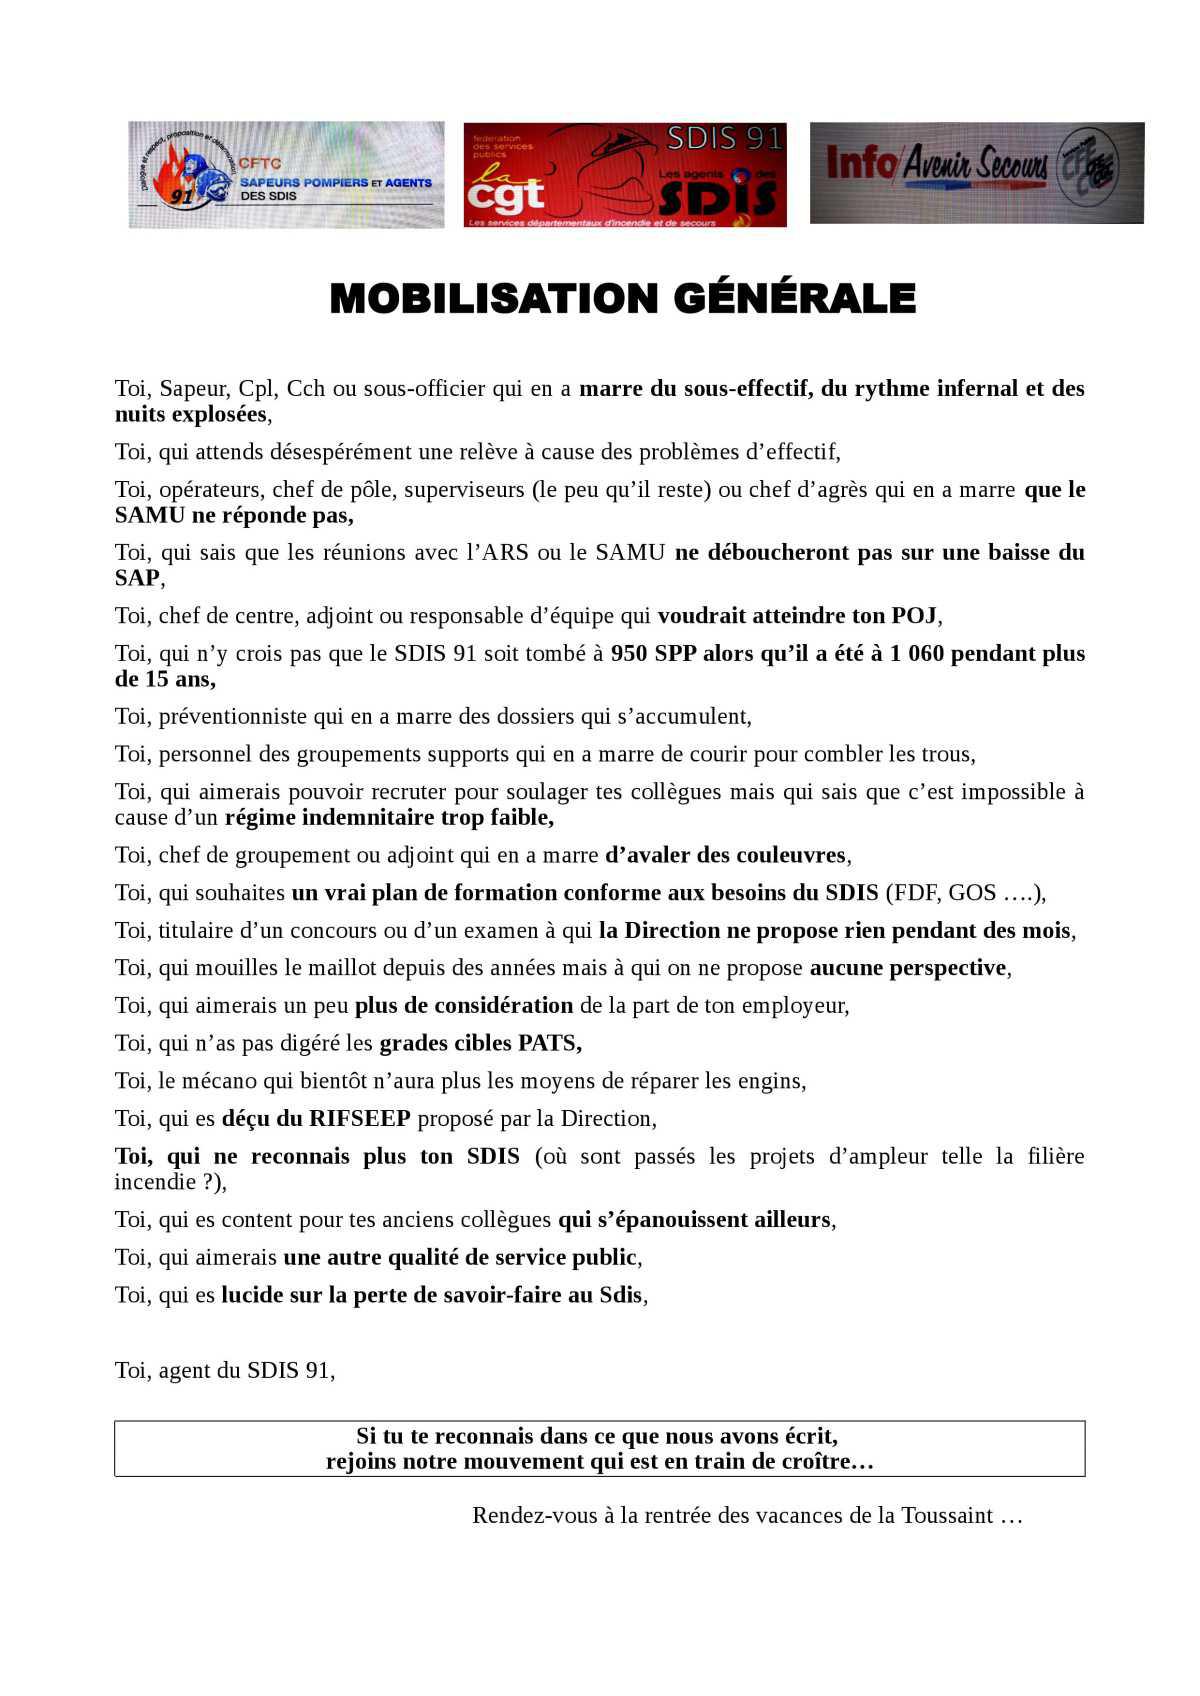 Mobilisation générale au SDIS 91